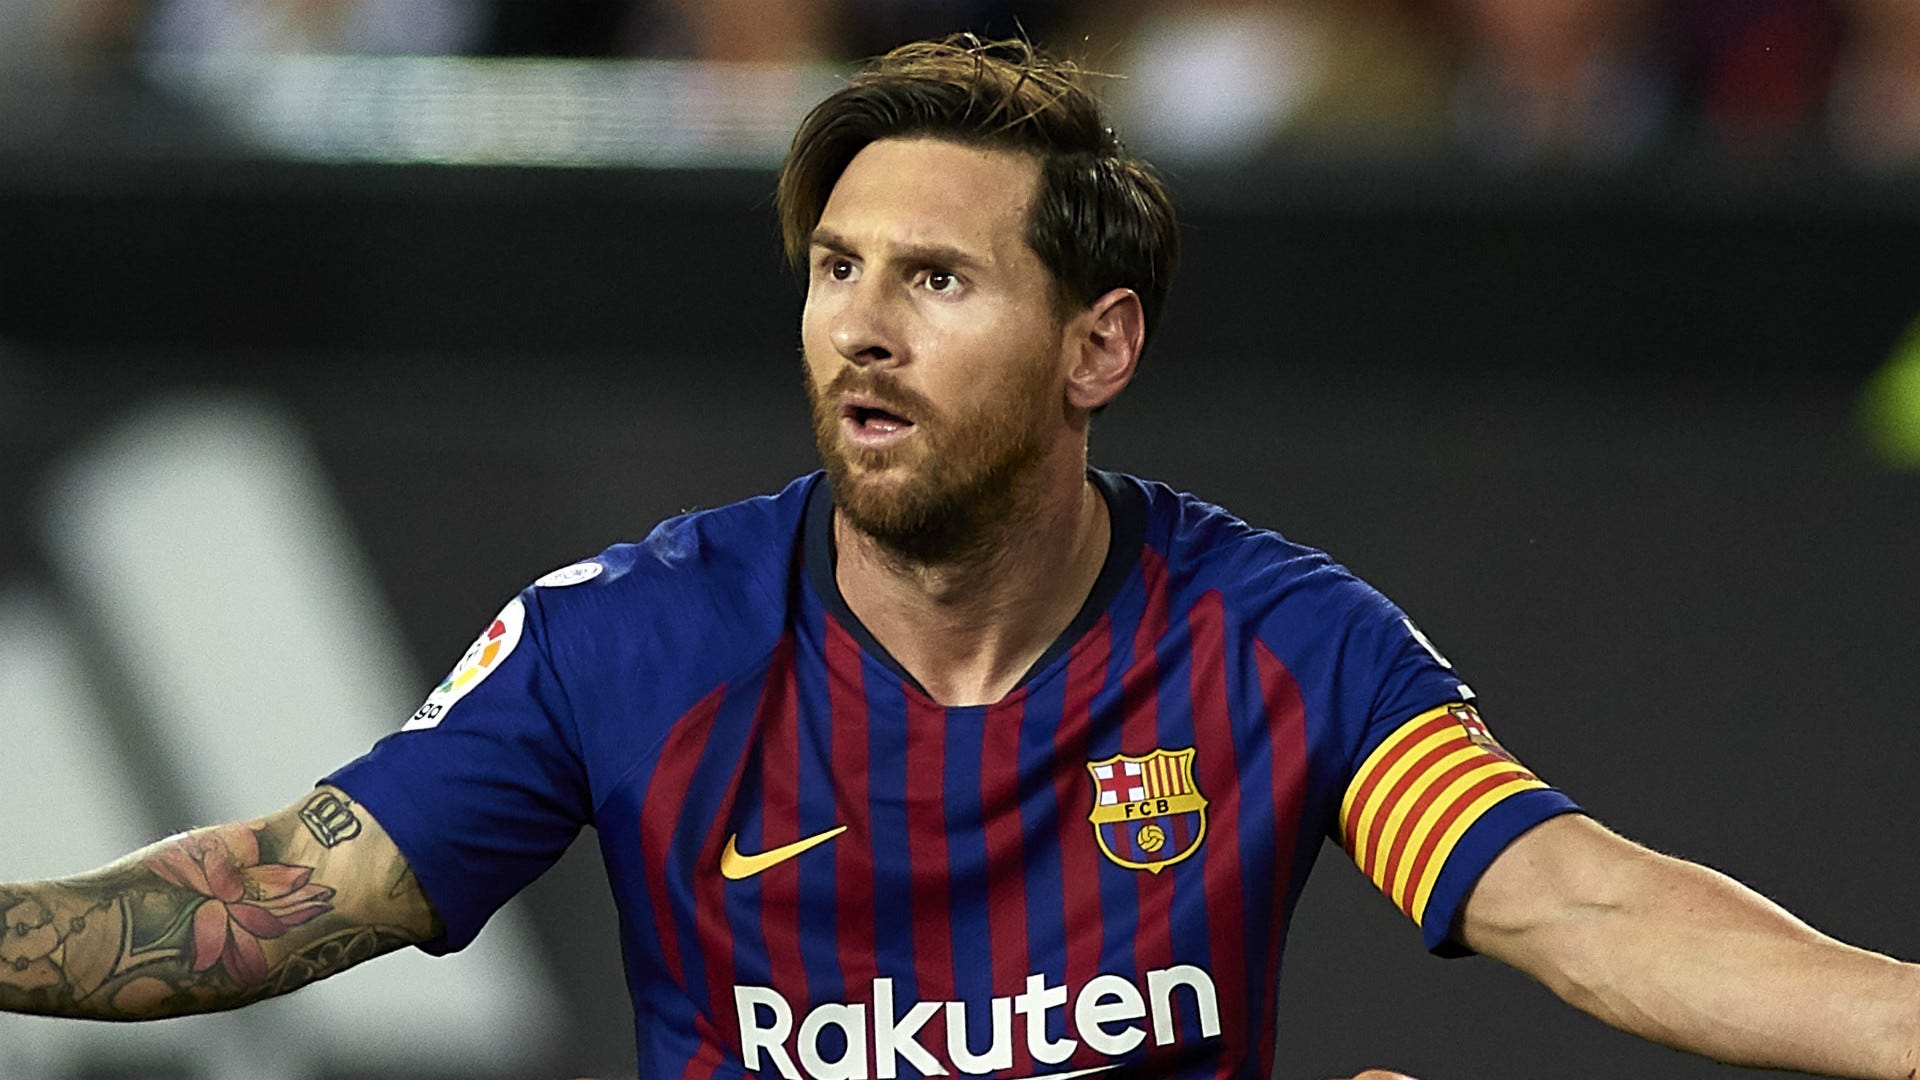 Messi: Để xem hình ảnh của Messi thì không có lý do nào là không đáng để thưởng thức. Siêu sao bóng đá này luôn sẵn sàng cho những đường bóng khó và những bàn thắng đẹp mắt, khiến cho trận đấu trở nên kịch tính và hấp dẫn. Hãy cùng nhìn lại các hình ảnh của anh ấy để cảm nhận được sự đặc biệt.